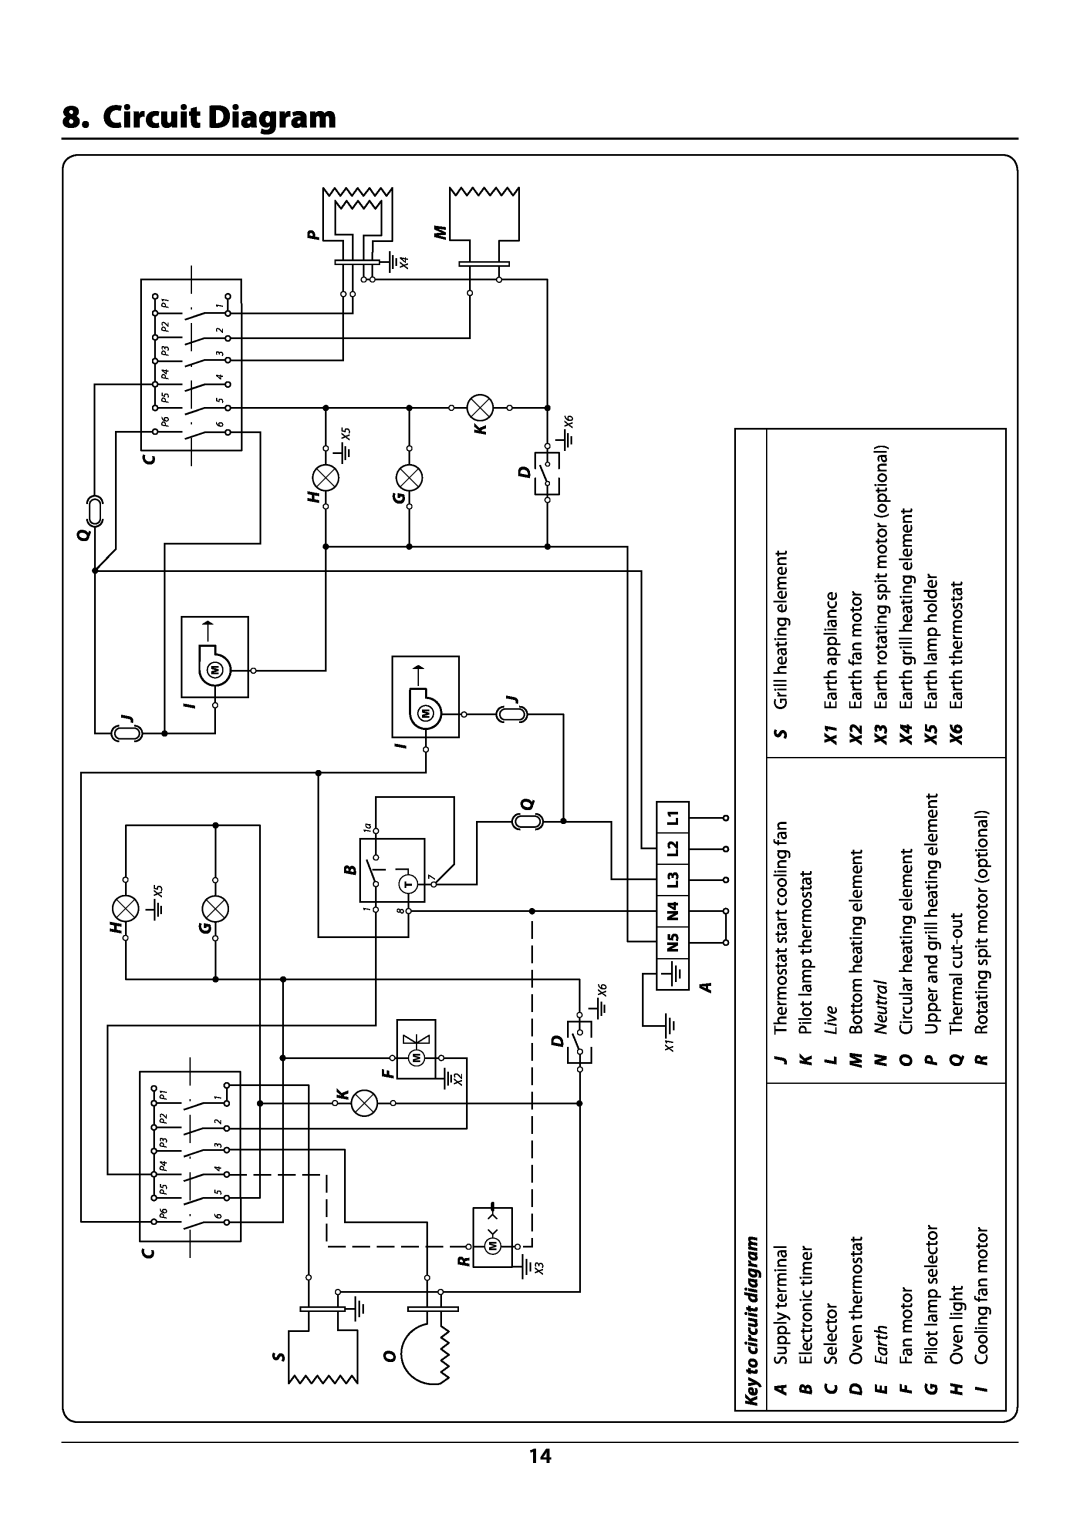 Rangemaster manual Circuit Diagram, Key to circuit diagram, L Live, Circuit diagram R9044 oven 